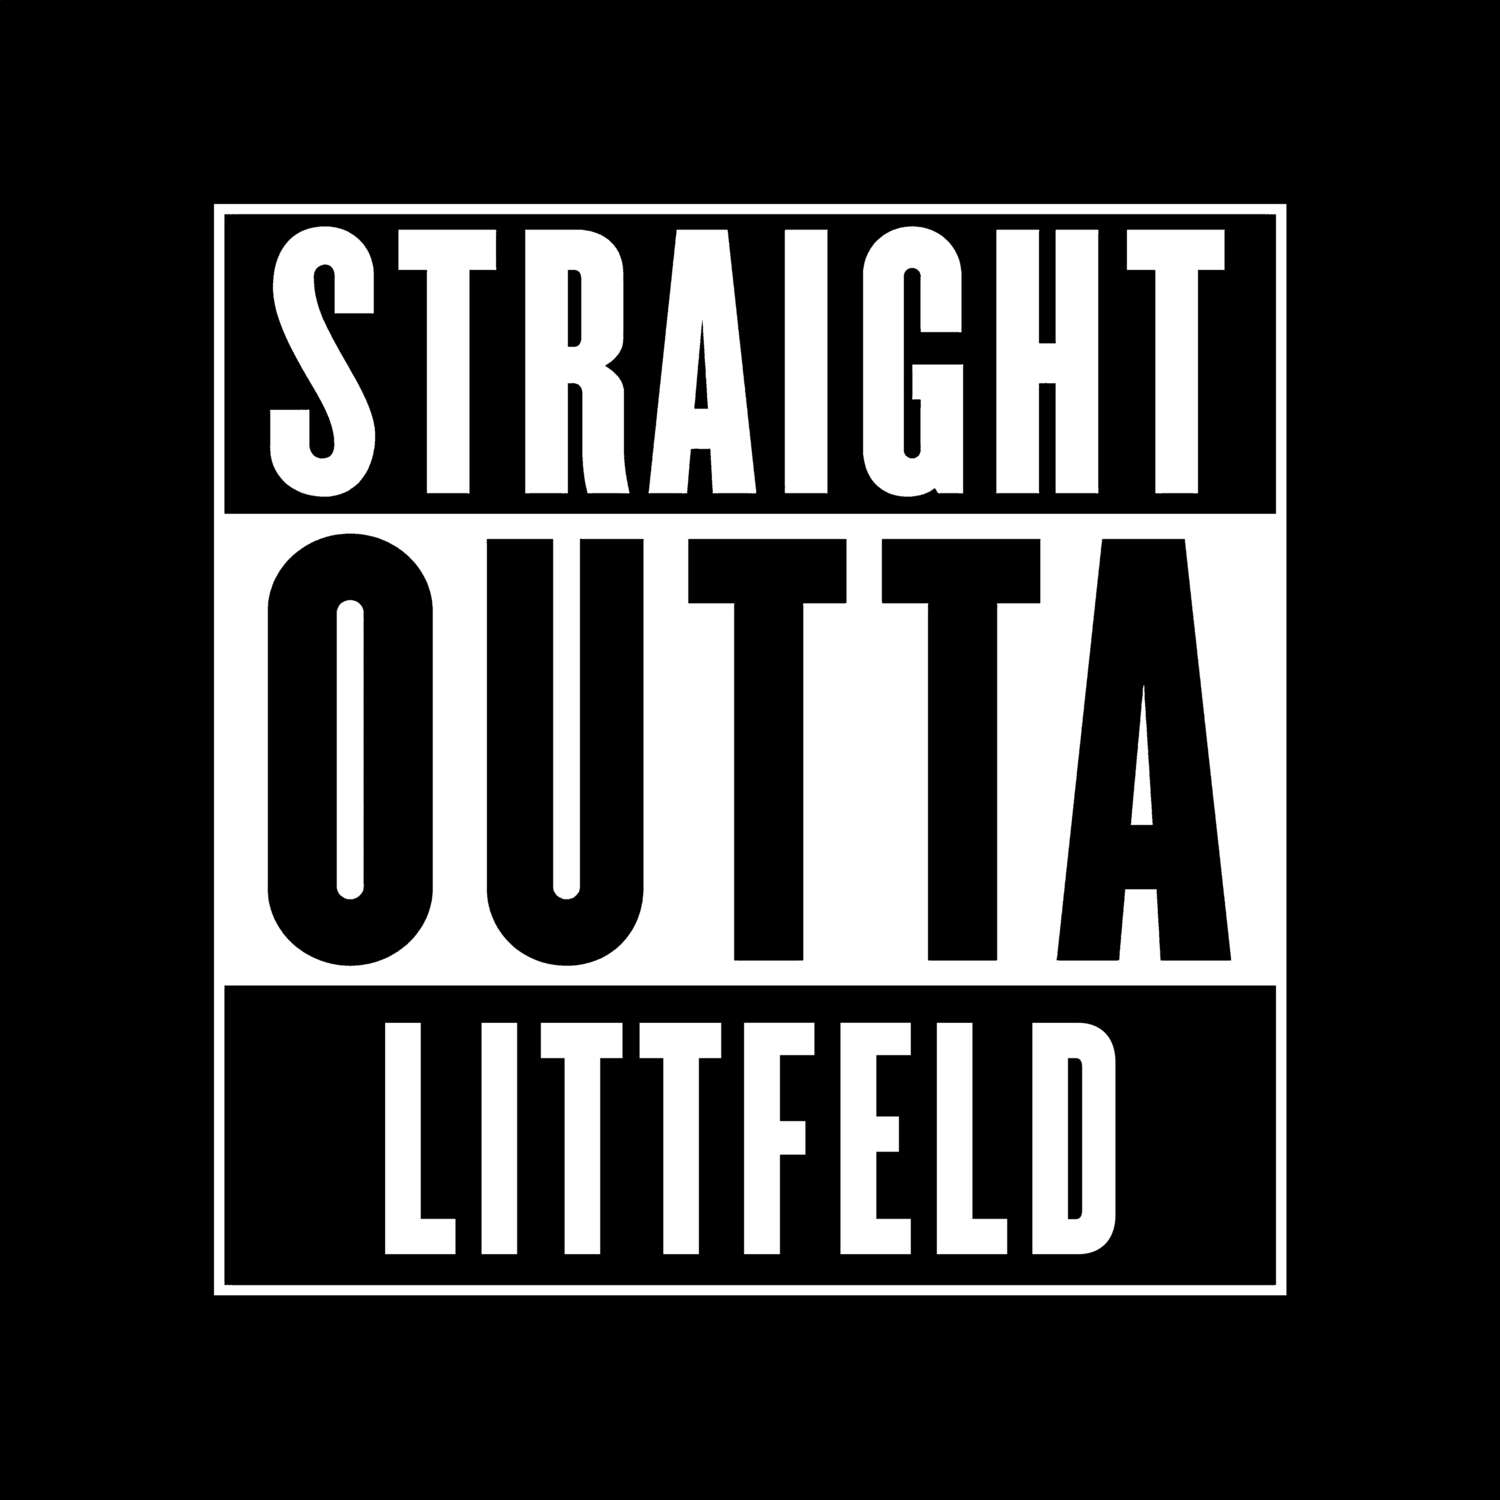 Littfeld T-Shirt »Straight Outta«